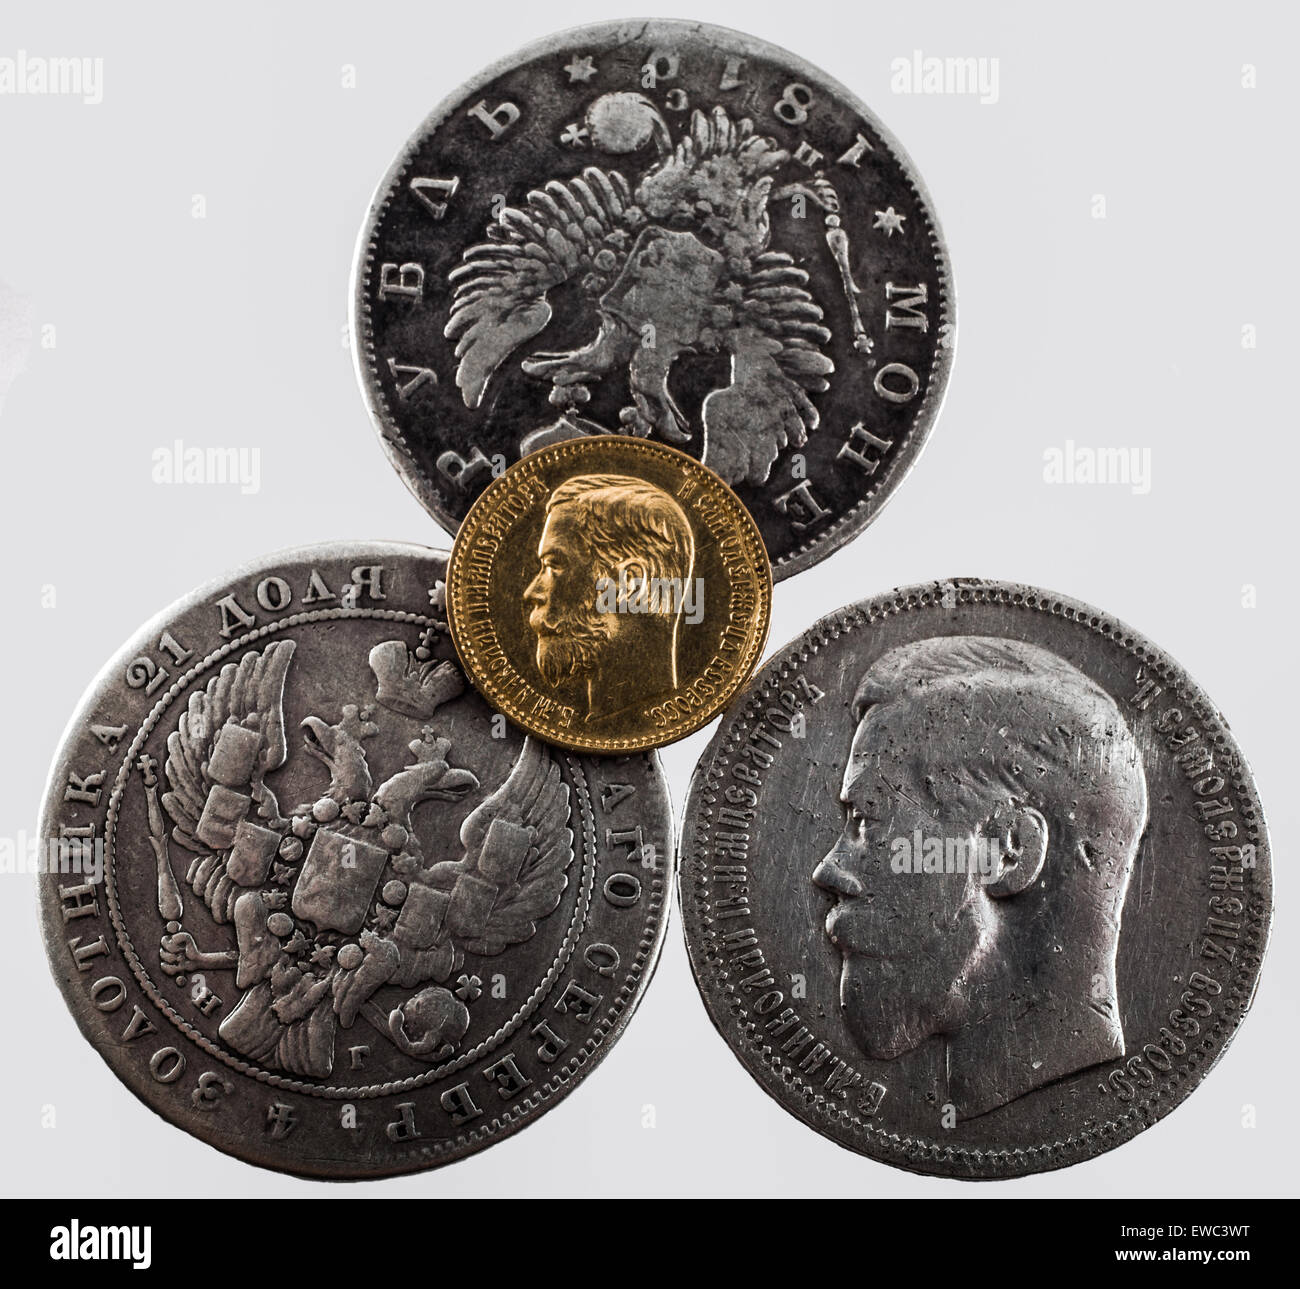 Monete d oro e d argento del tsar della casa di Romanov del 19-20 secoli. Foto Stock